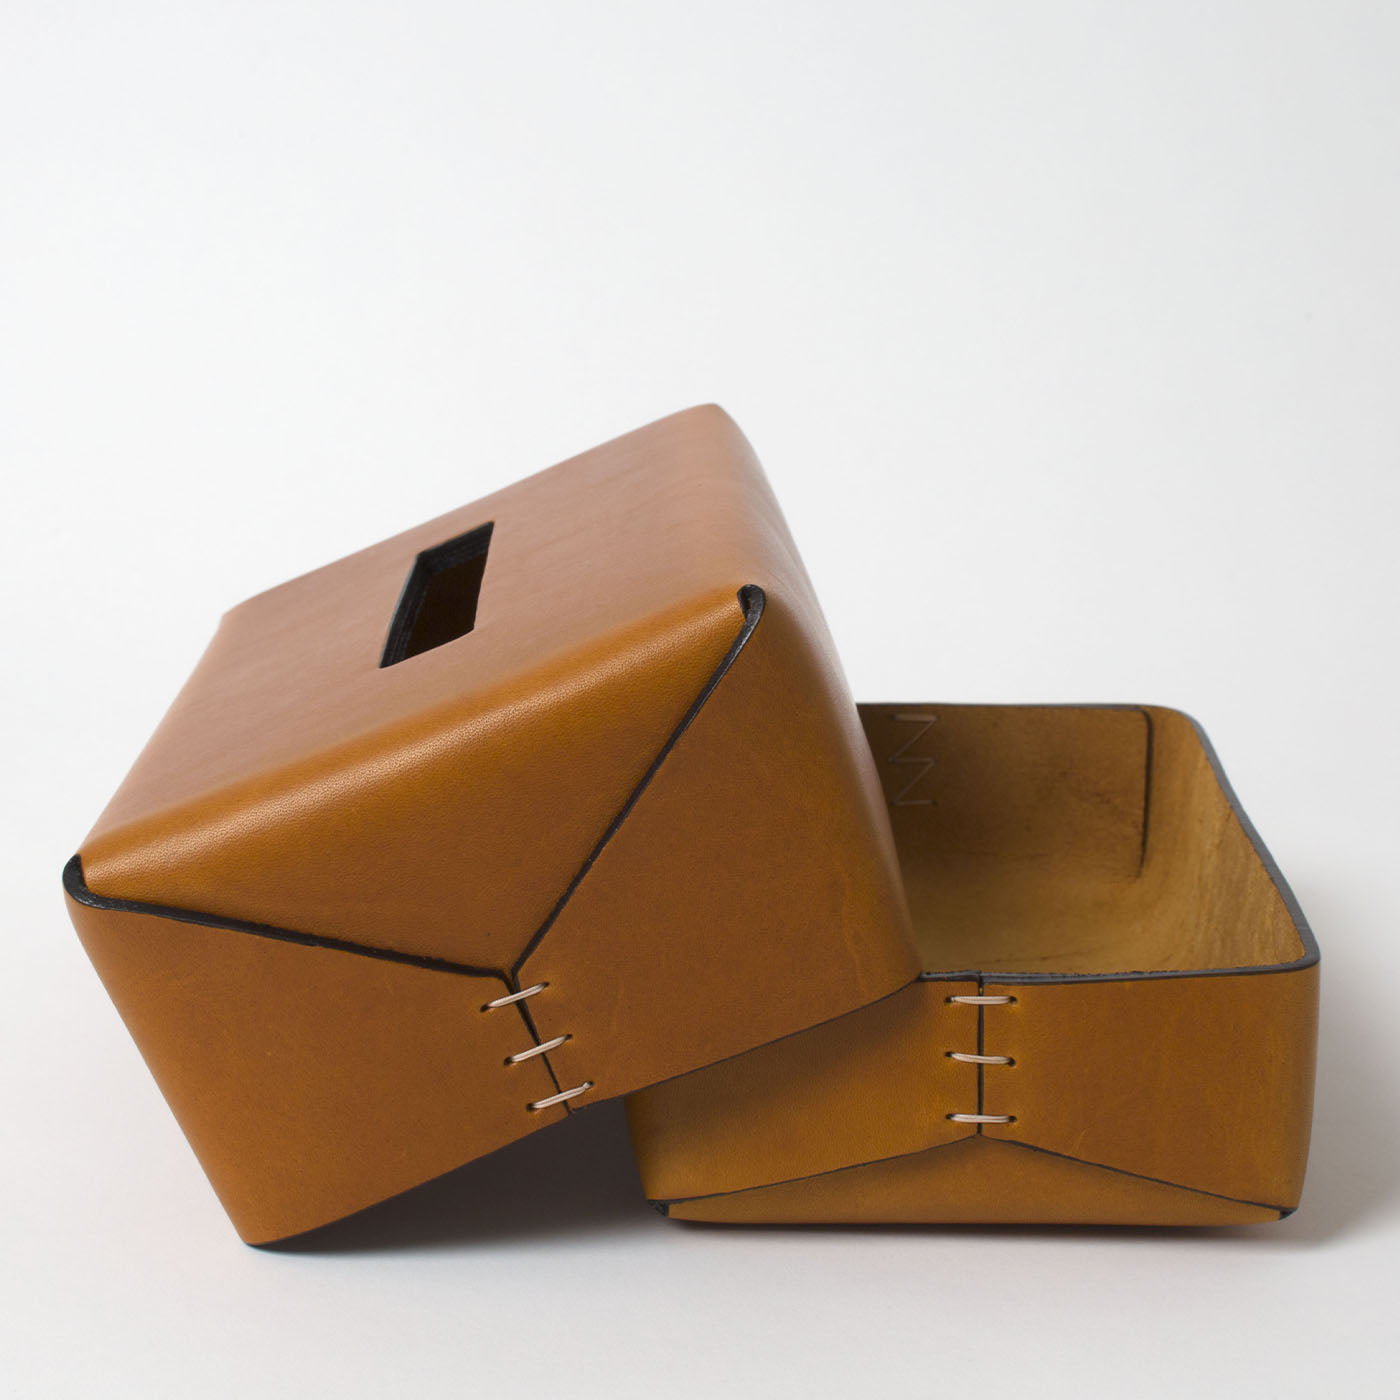 Regular Rectangular-Cut Brown Tissue Box by Oscar Maschera - Alternative view 2